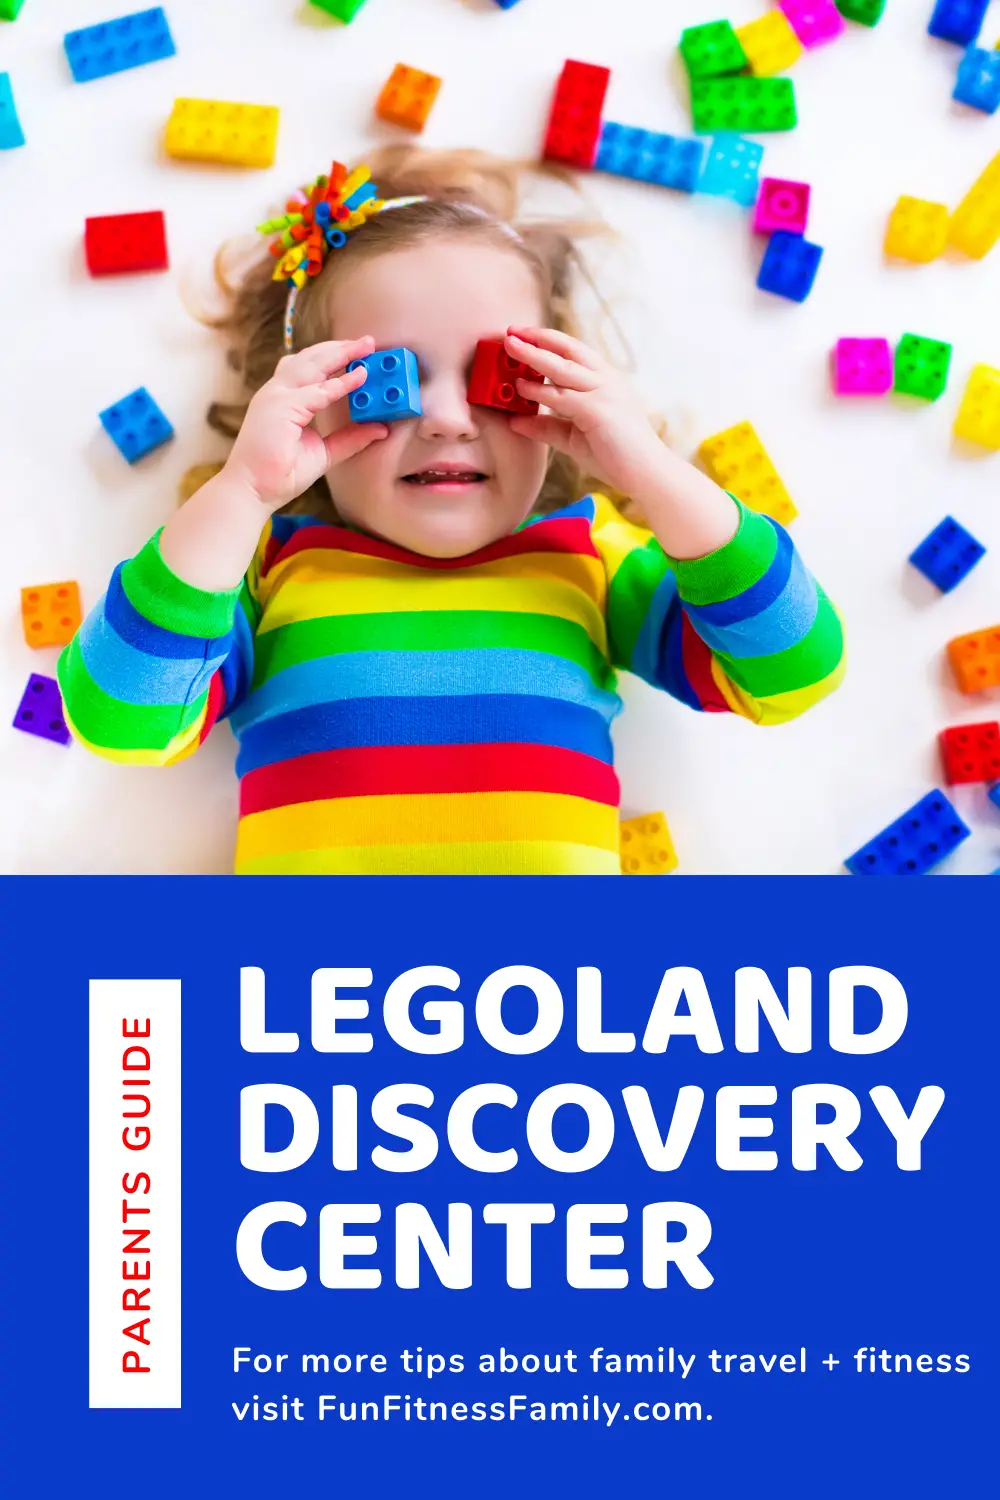 Where do I enter a Promo Code online? - LEGOLAND Discovery Center Michigan